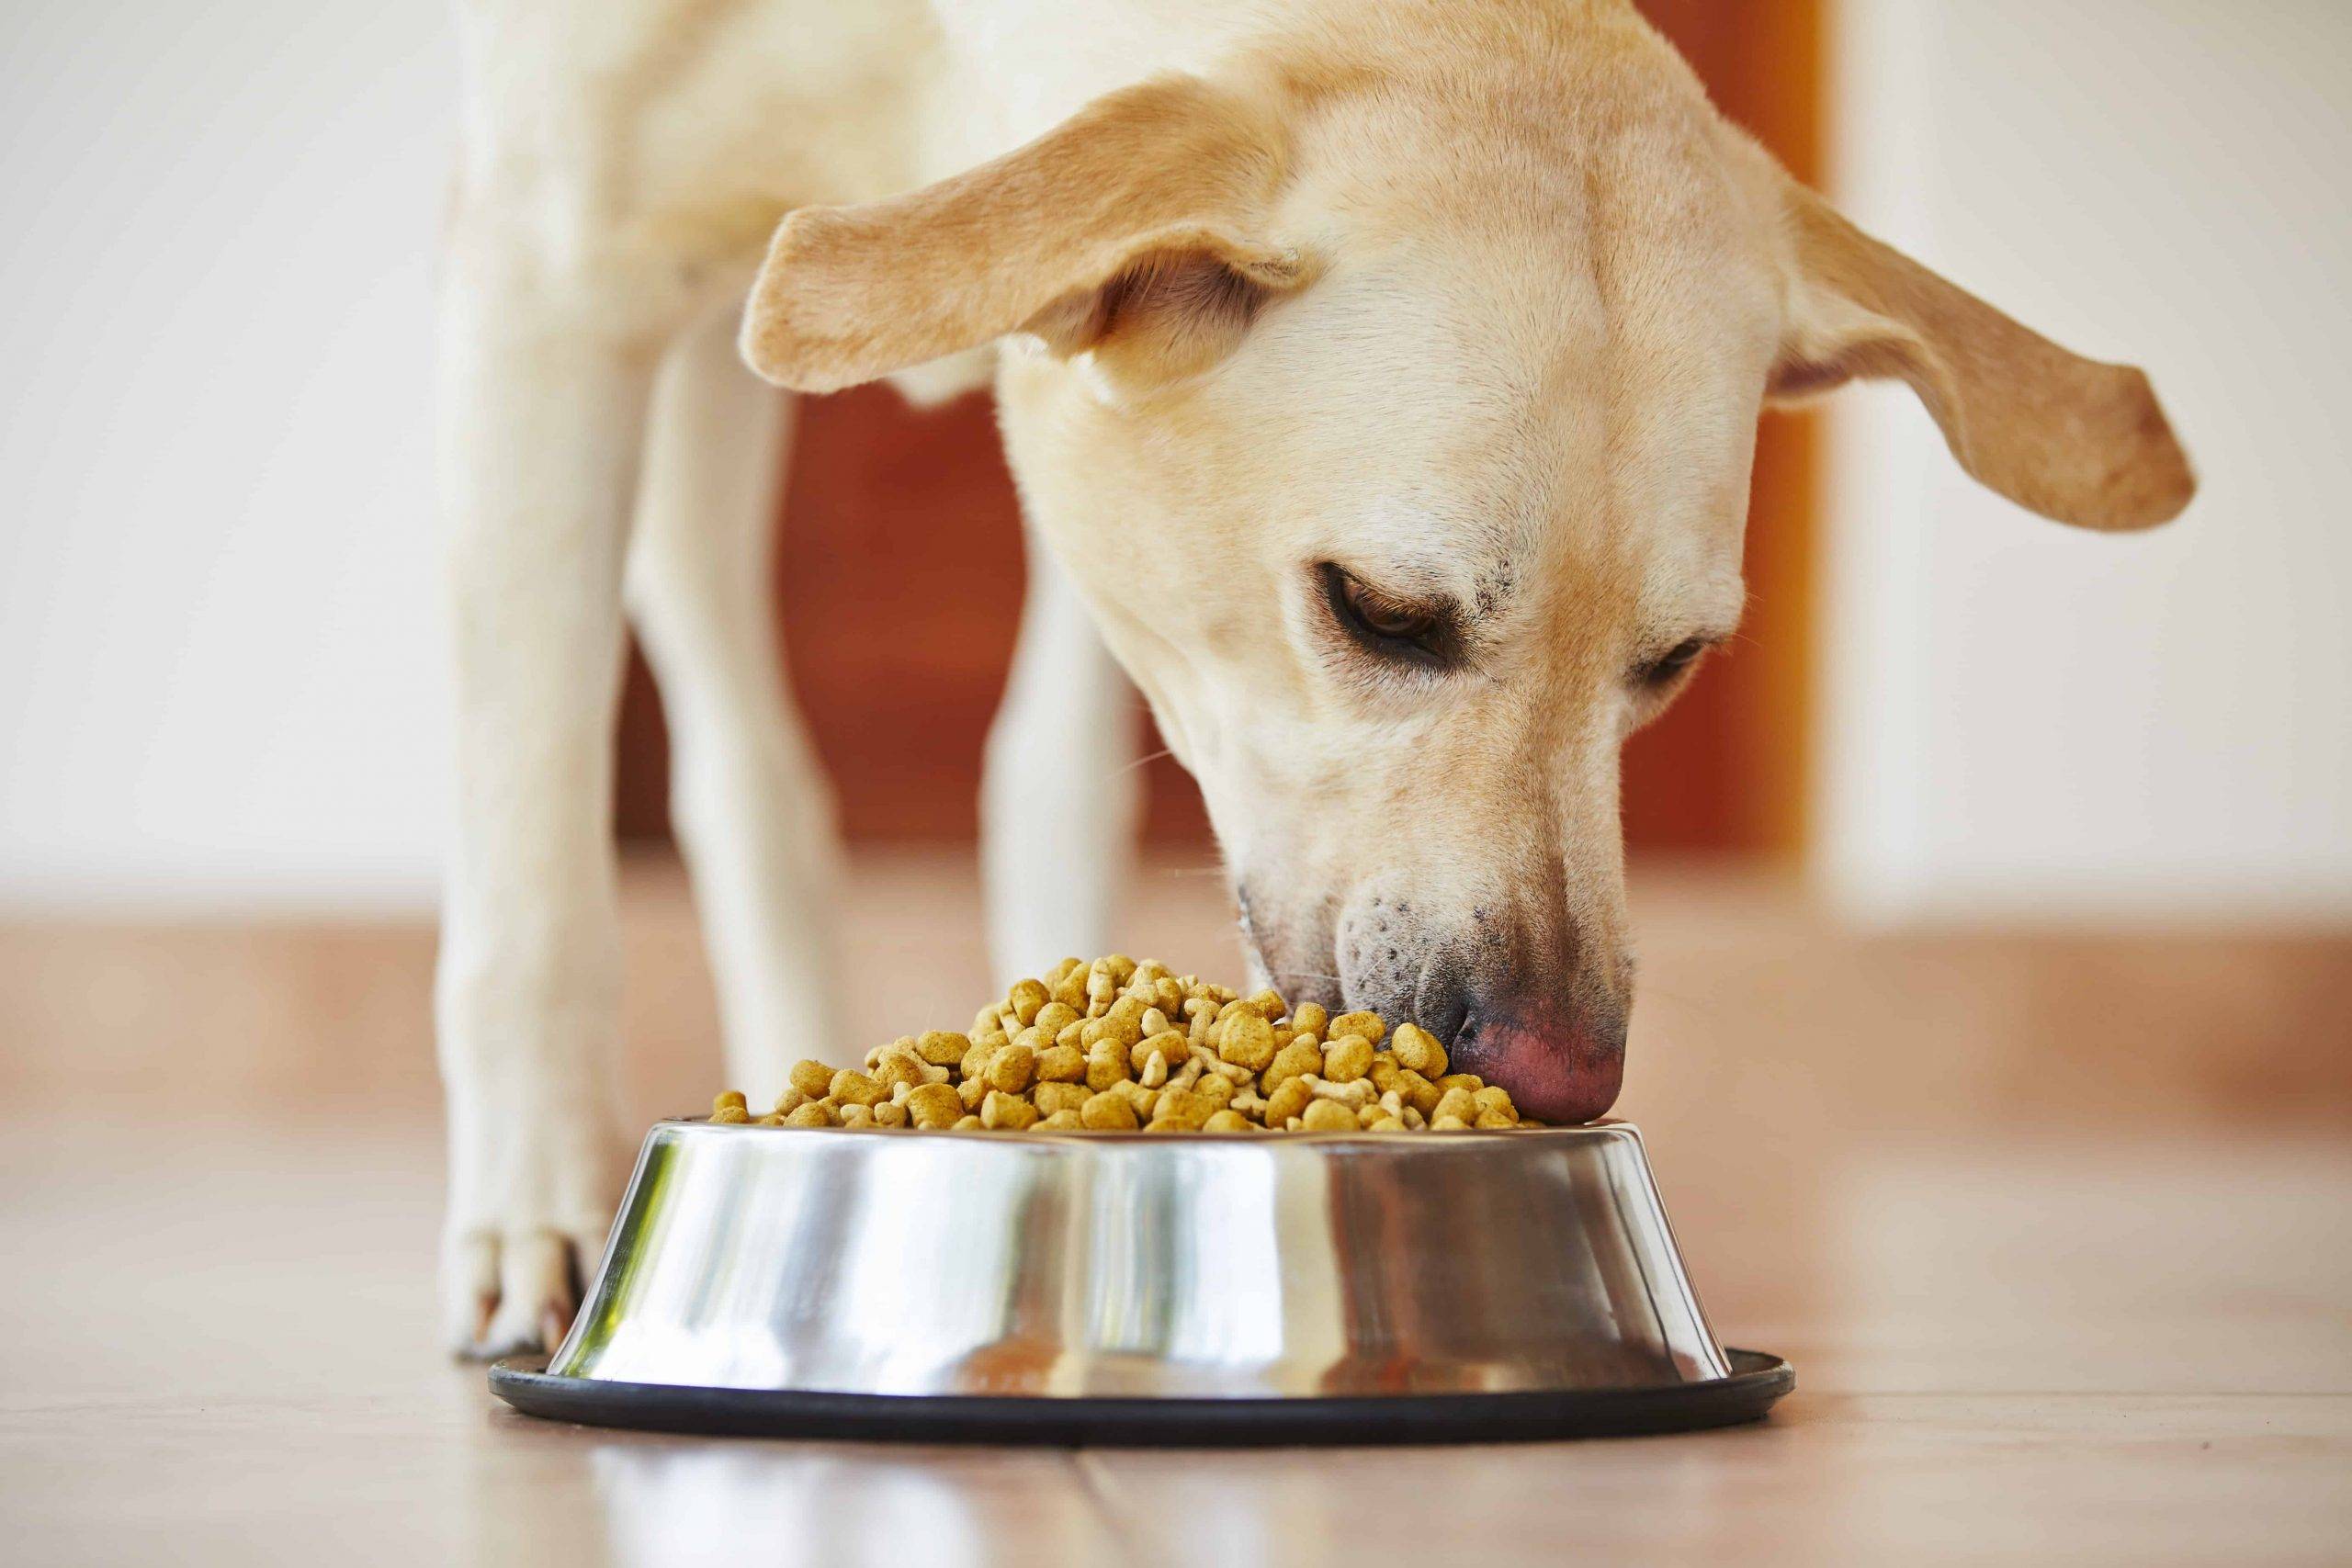 Питание собак и кошек: можно ли кормить человеческой едой домашних животных